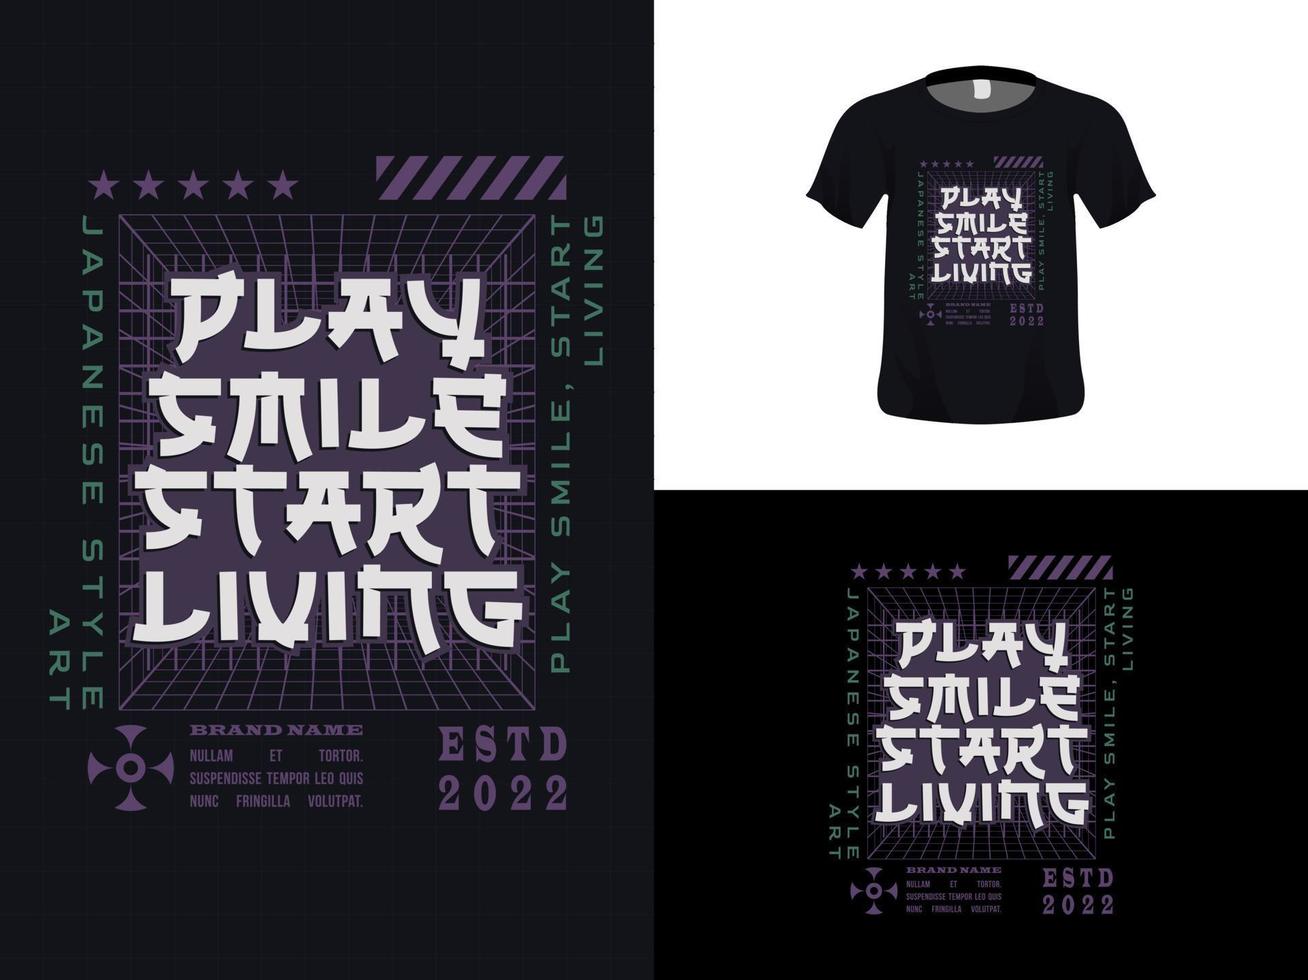 diseño de cita de tipografía de camiseta, jugar sonrisa empezar a vivir para imprimir. plantilla de póster, vector premium.